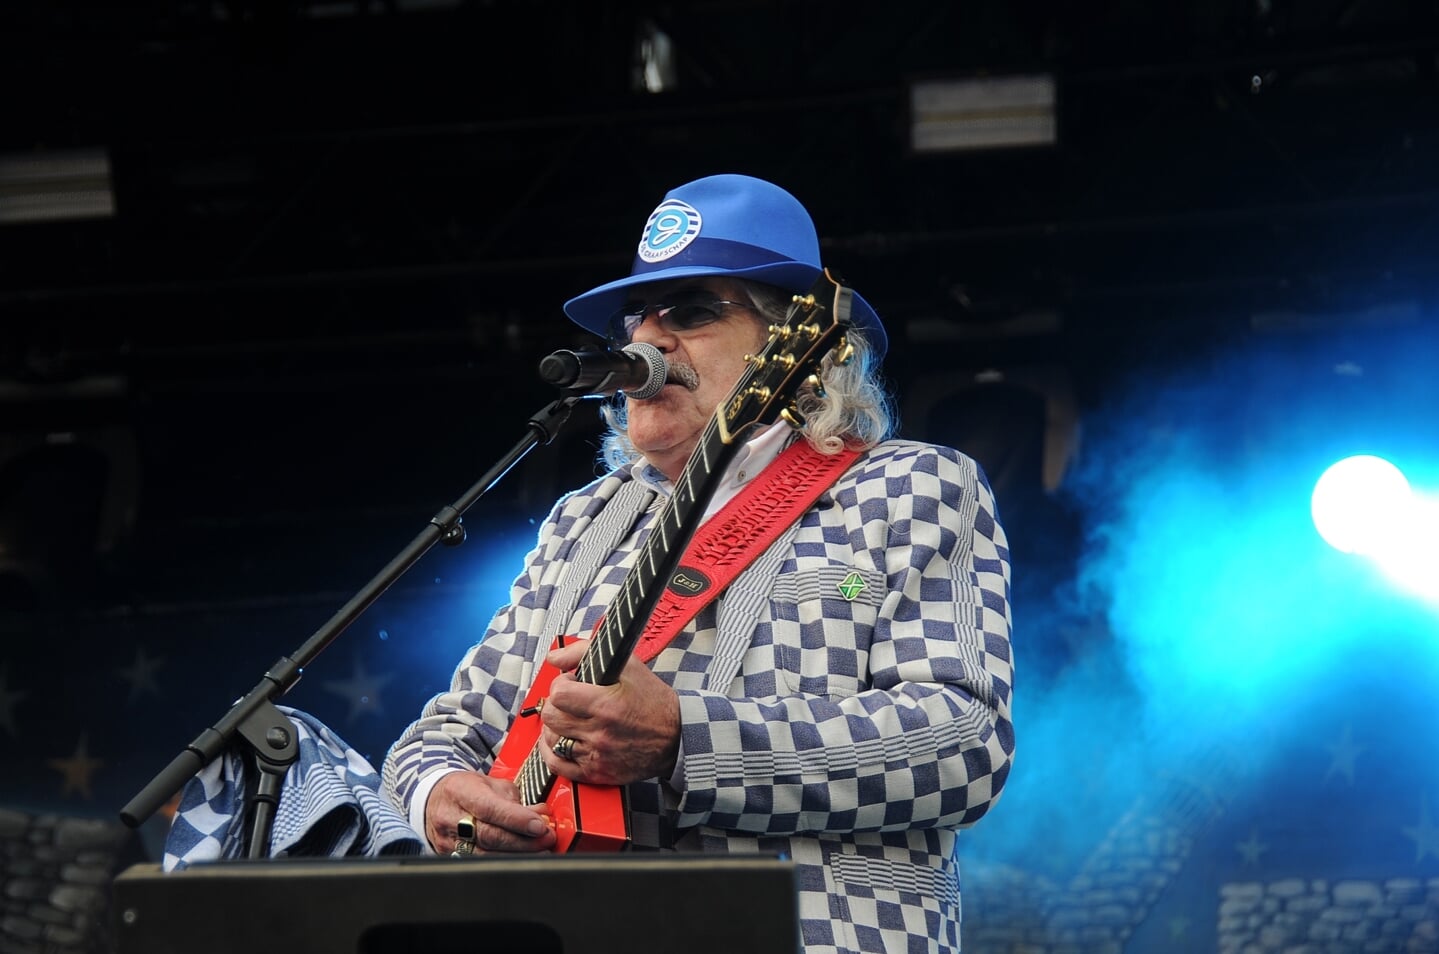 Bennie Jolink tijdens het optreden in Lochem, mei 2019. Foto: Achterhoekfoto.nl/Johan Braakman